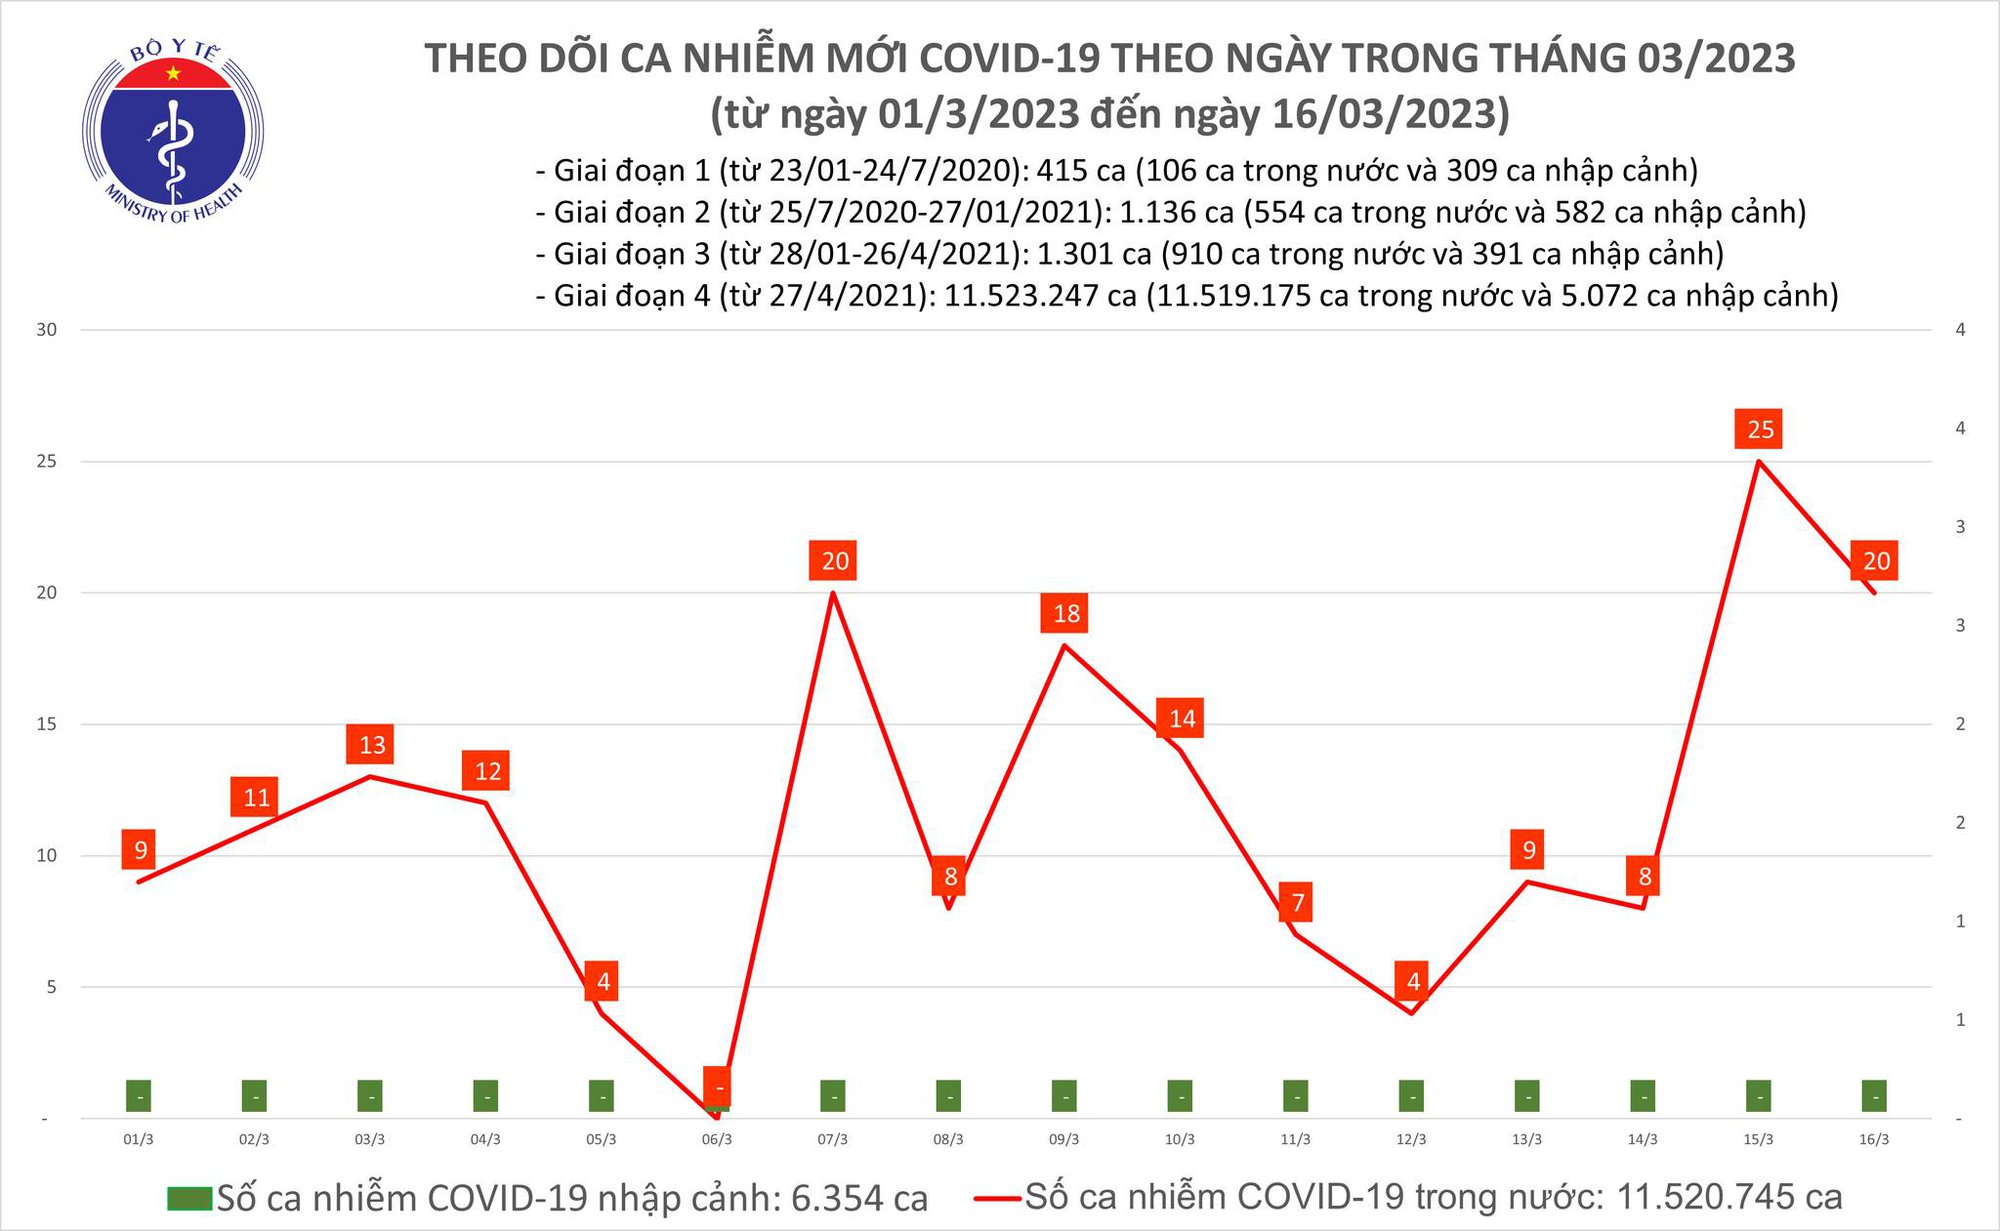 Ngày 16/3: Có 20 ca COVID-19 mới, bệnh nhân nặng tăng nhanh - Ảnh 1.